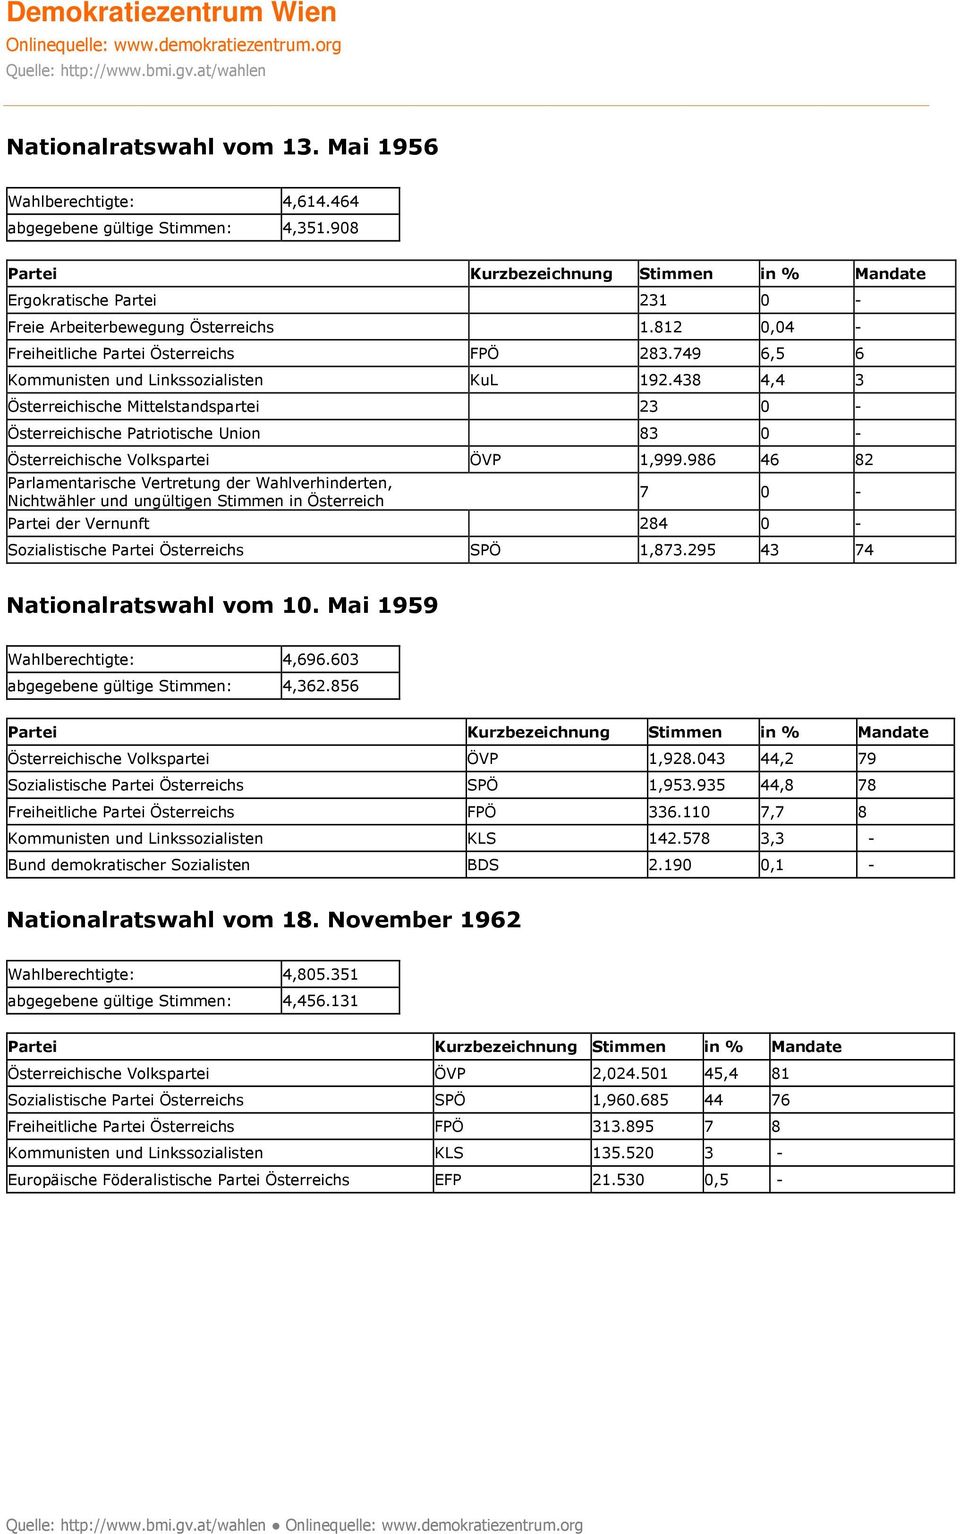 438 4,4 3 Österreichische Mittelstandspartei 23 0 - Österreichische Patriotische Union 83 0 - Österreichische Volkspartei ÖVP 1,999.